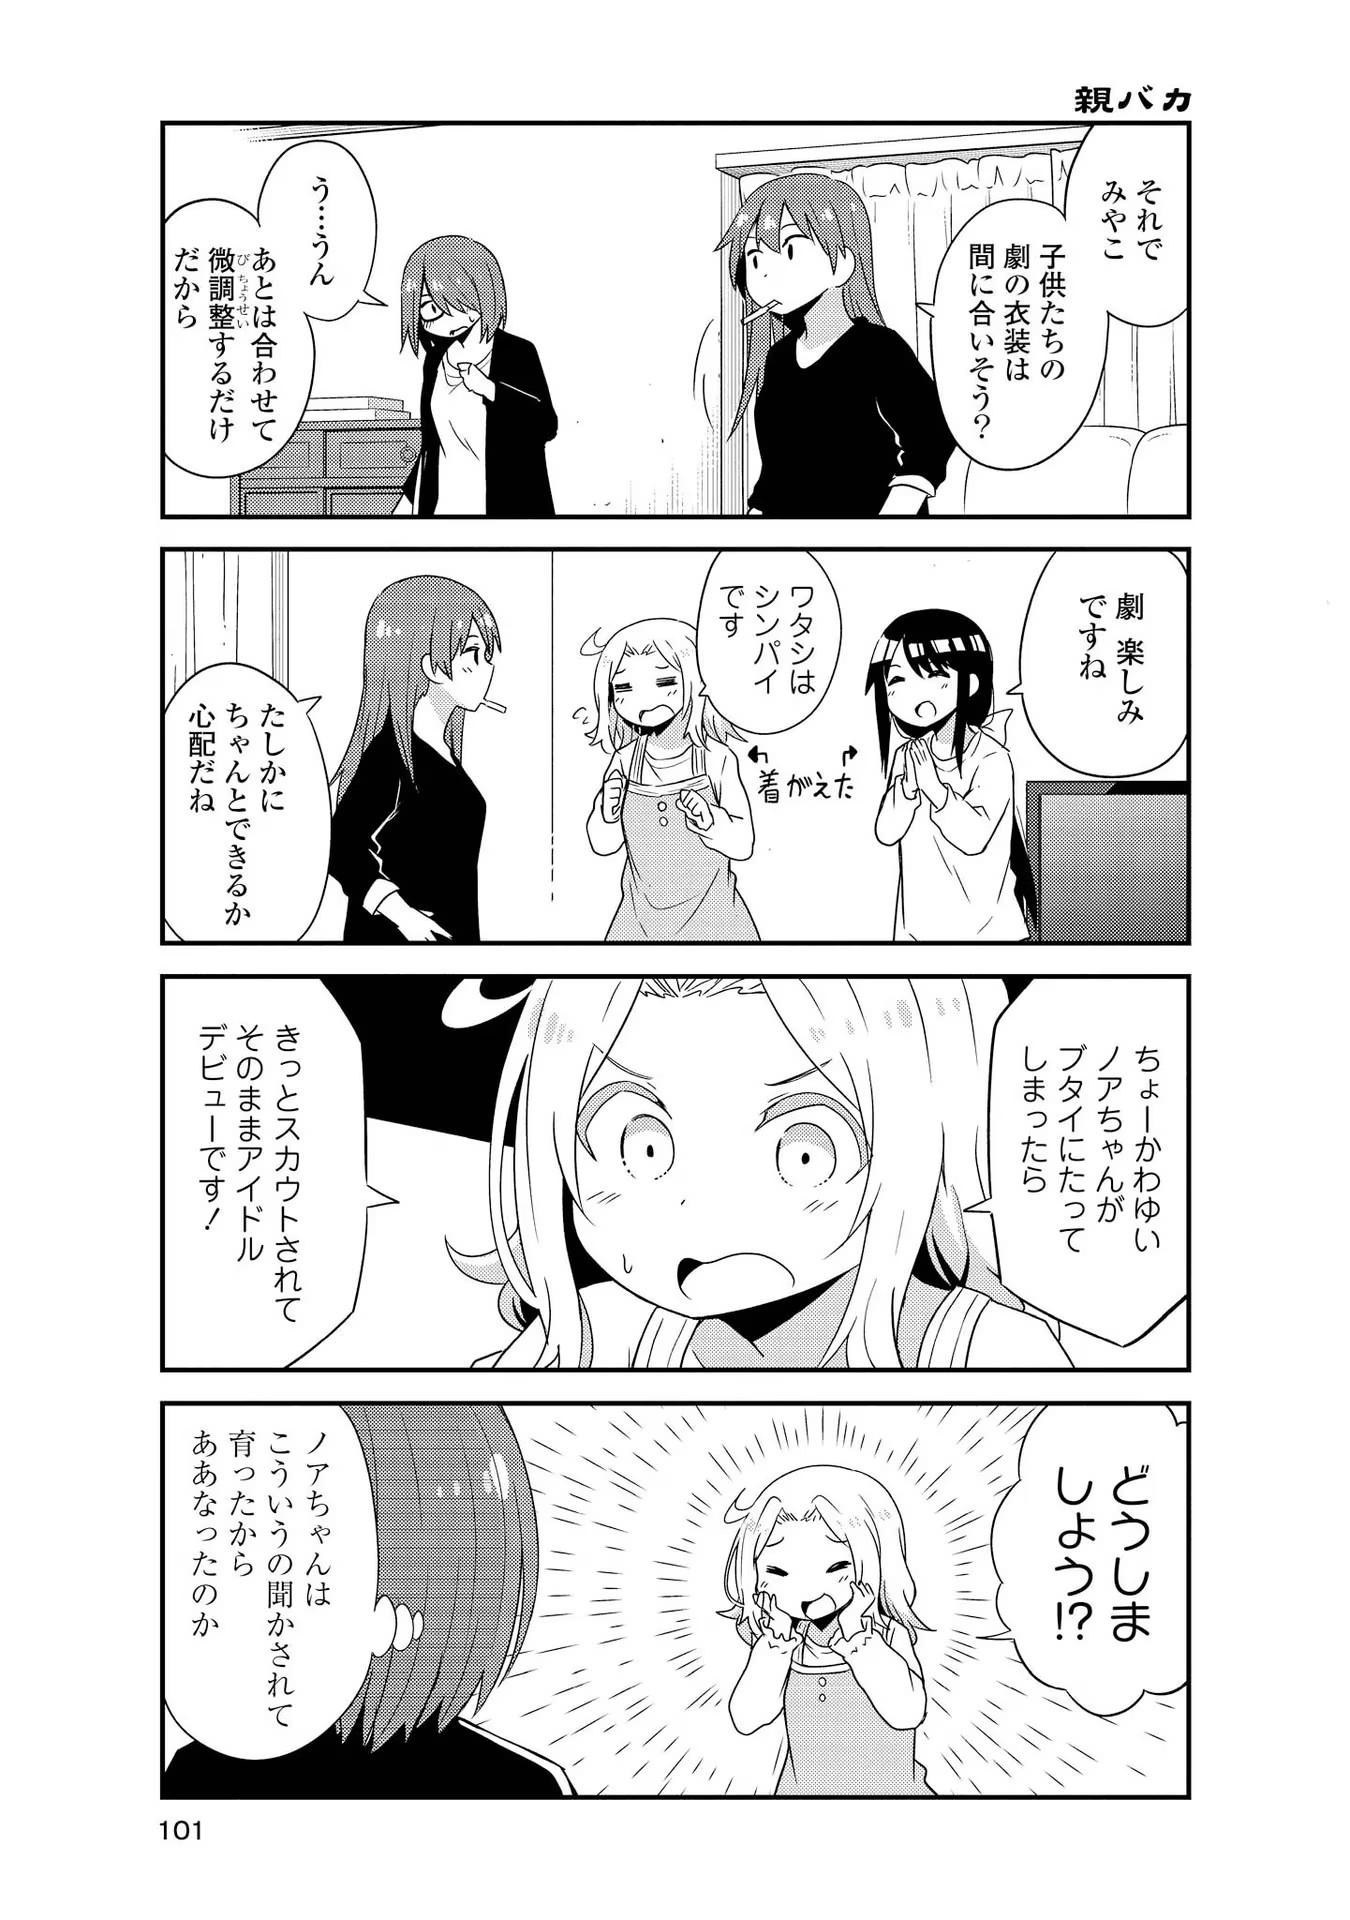 Watashi ni Tenshi ga Maiorita! - Chapter 34.5 - Page 5